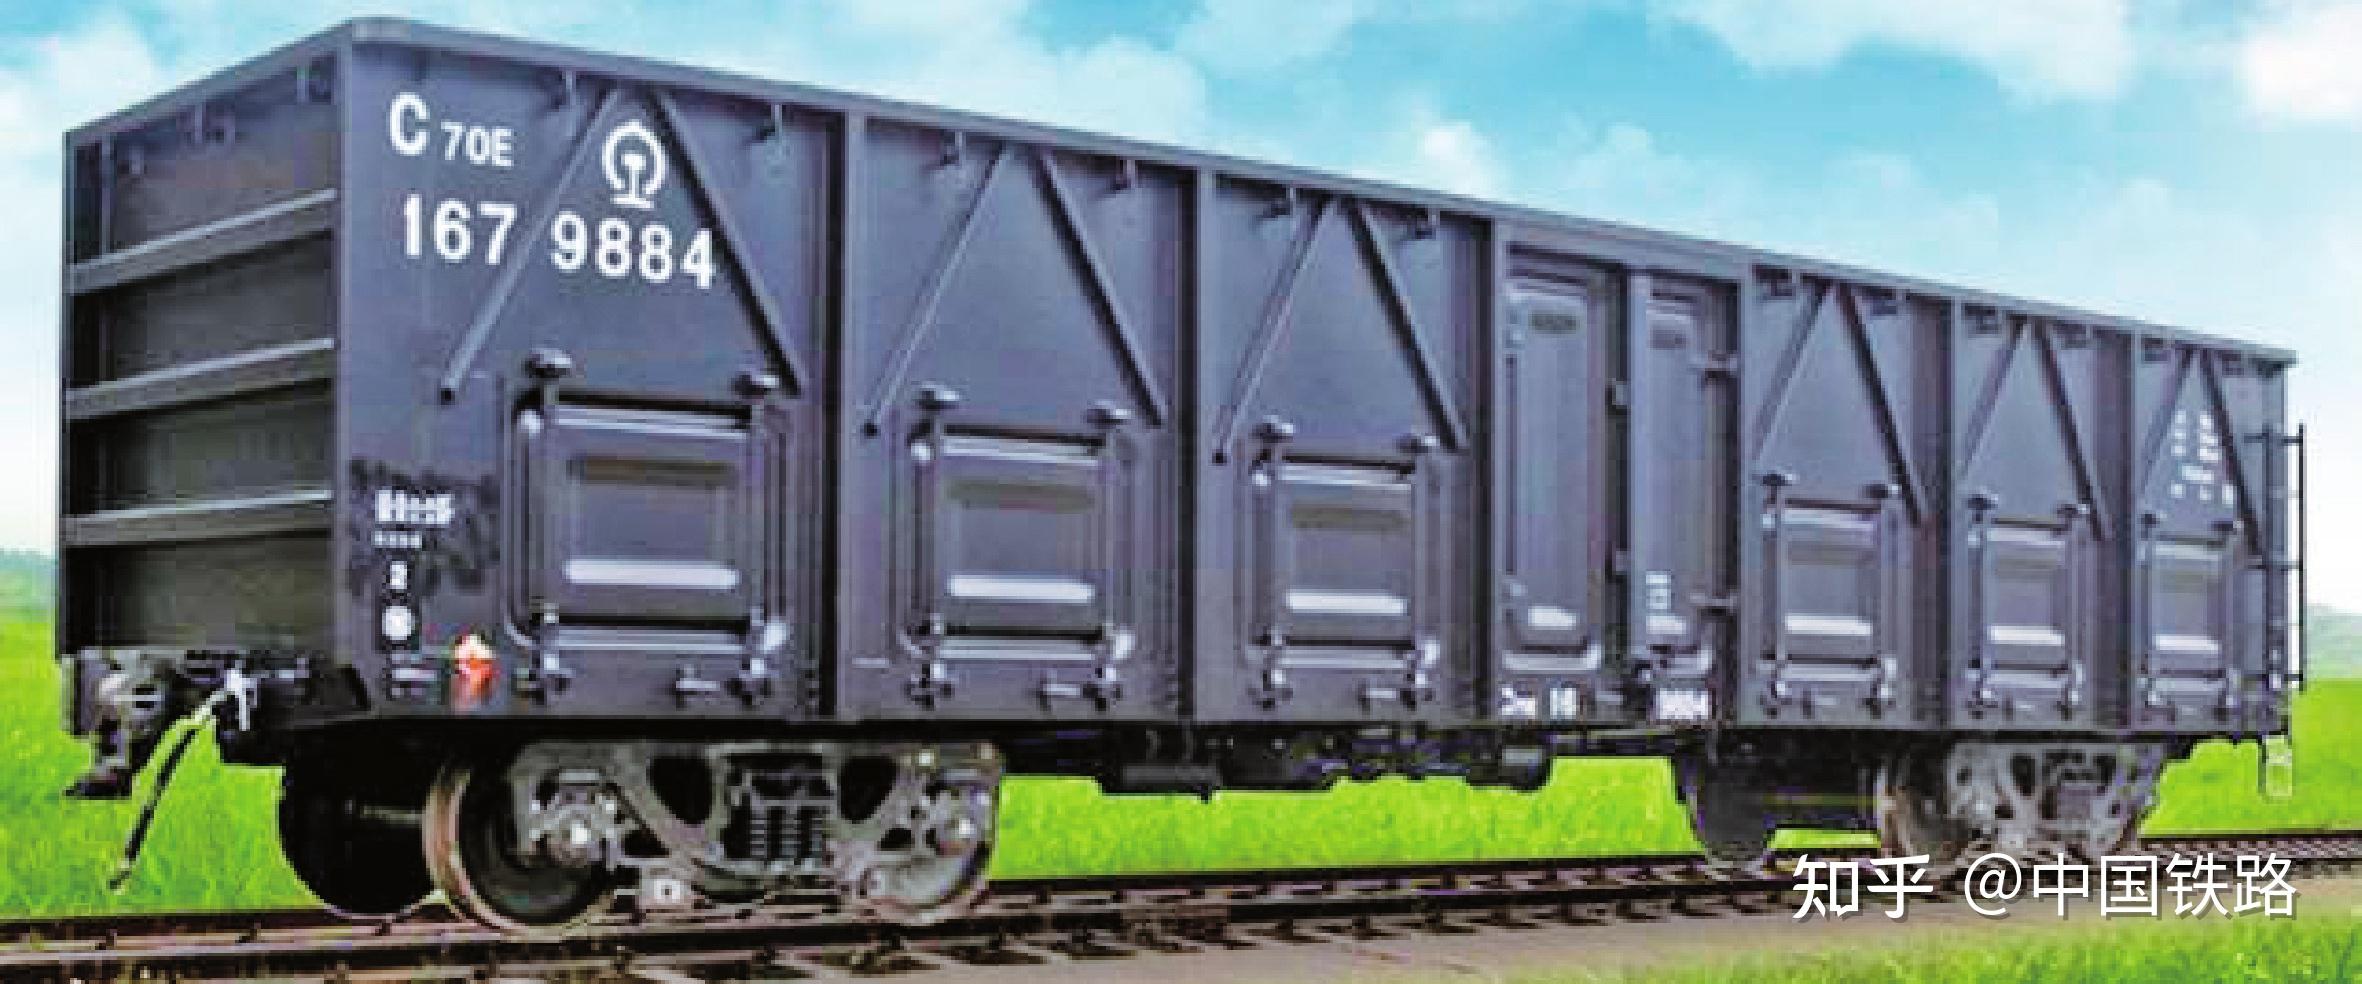 【铁道知识·车辆】我国铁路货车——通用敞车 